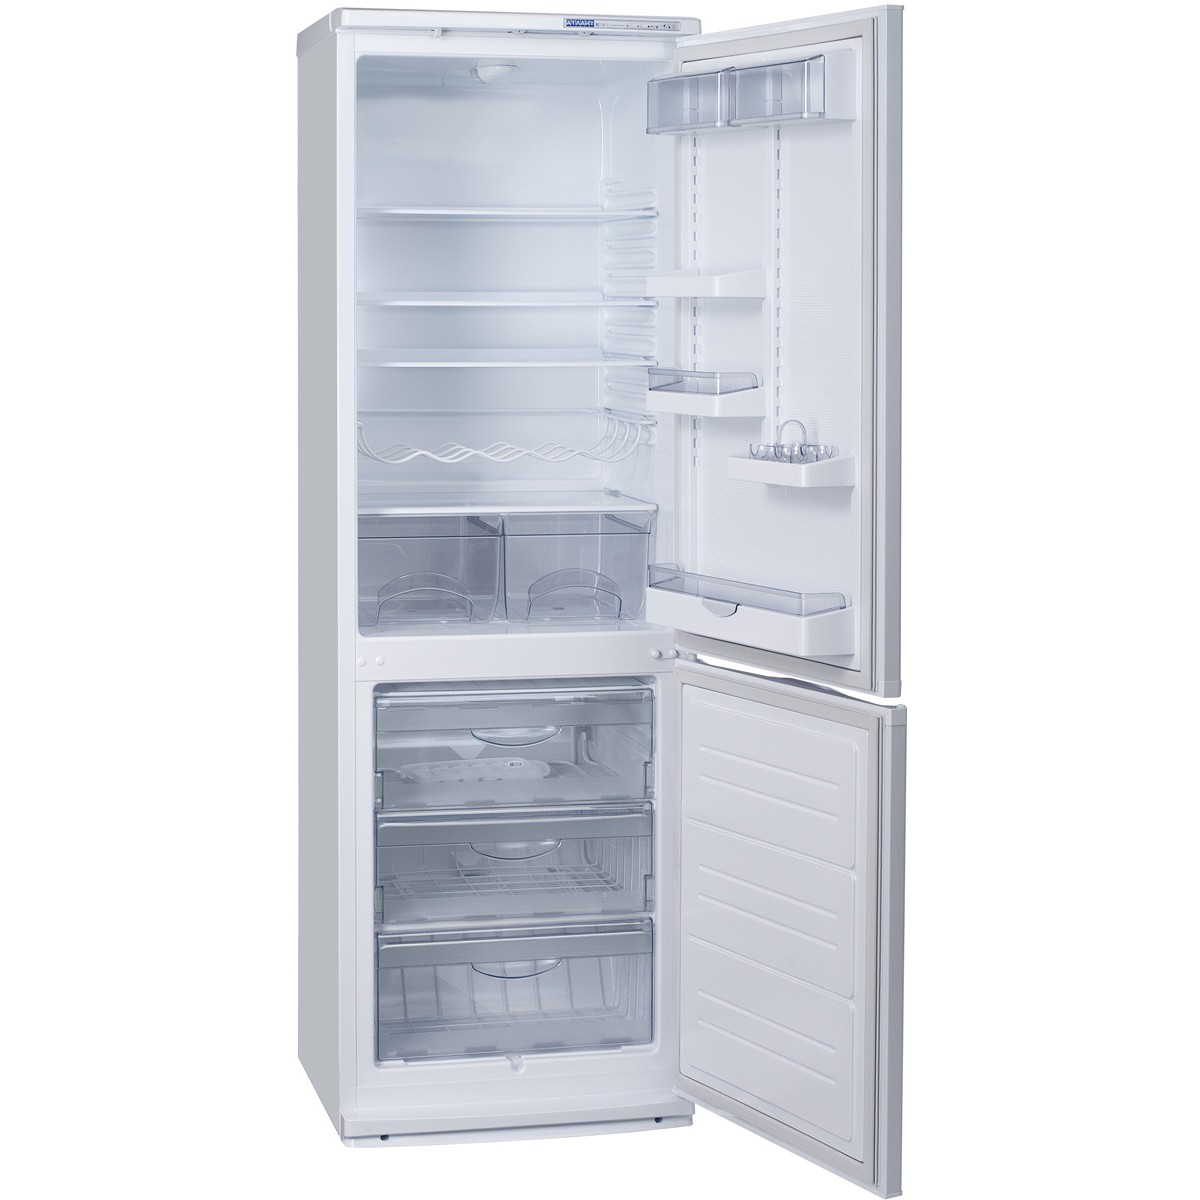 Васко ру холодильники. Холодильник Атлант хм 4010-022. Атлант XM 6021-031. ATLANT хм 6021-031. Атлант хм-6021-031.